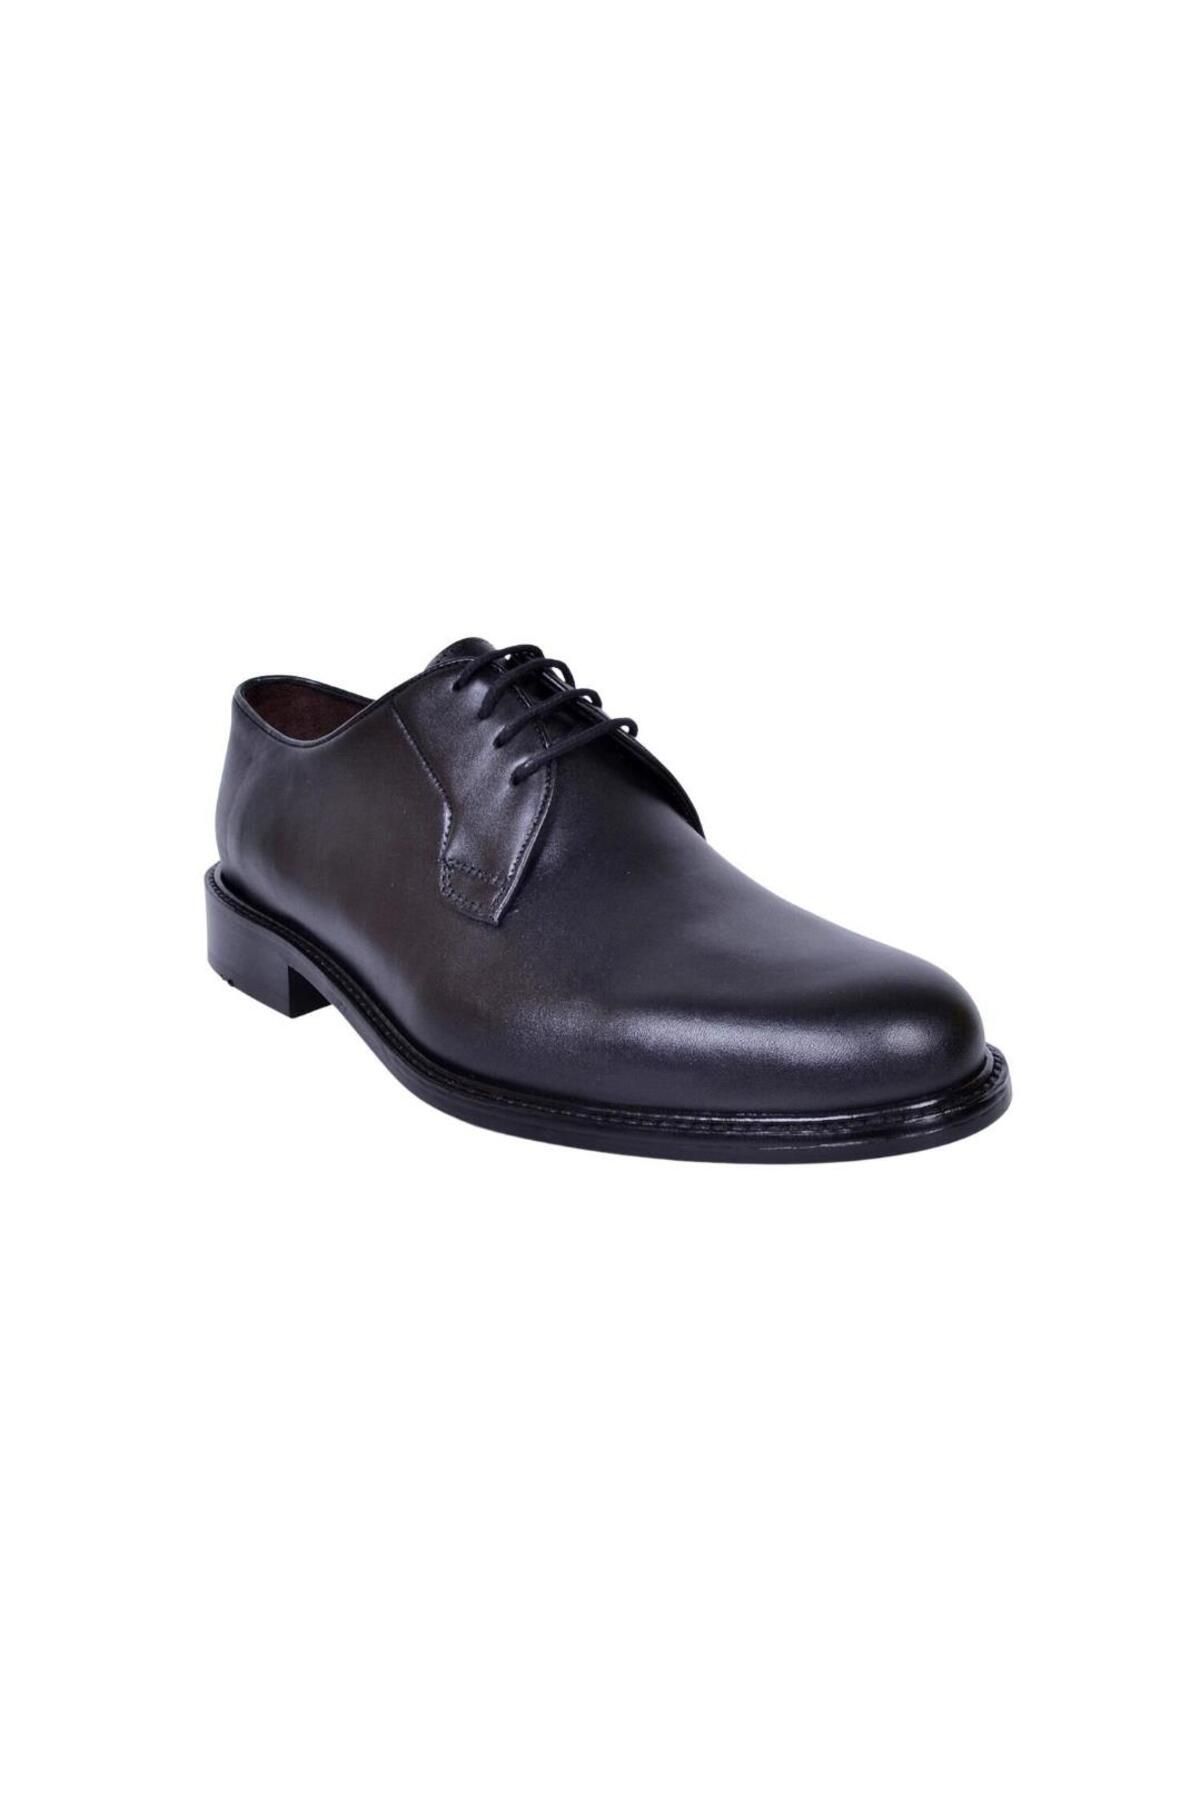 DANACI Danacı 9437 Erkek Hakiki Deri Kösele Taban Premium Klasik Ayakkabı